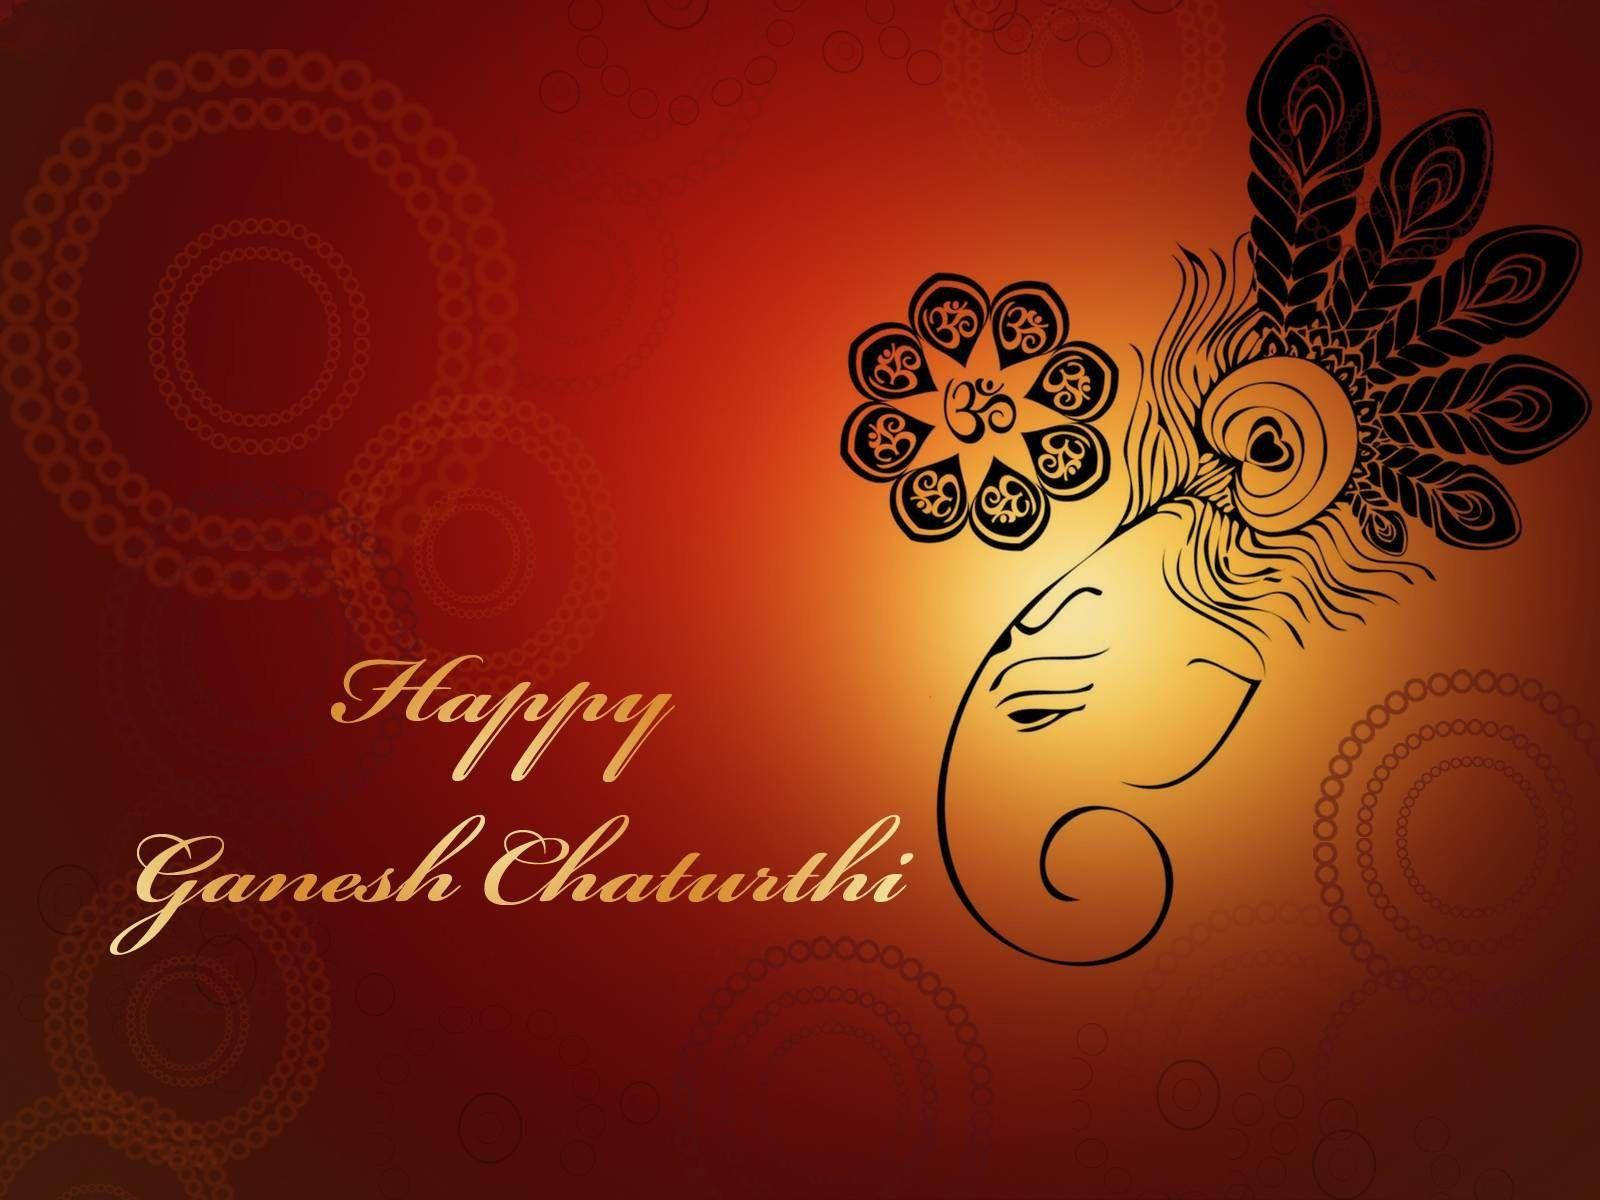 Tarjetade Felicitación De Ganesh Chaturthi Fondo de pantalla